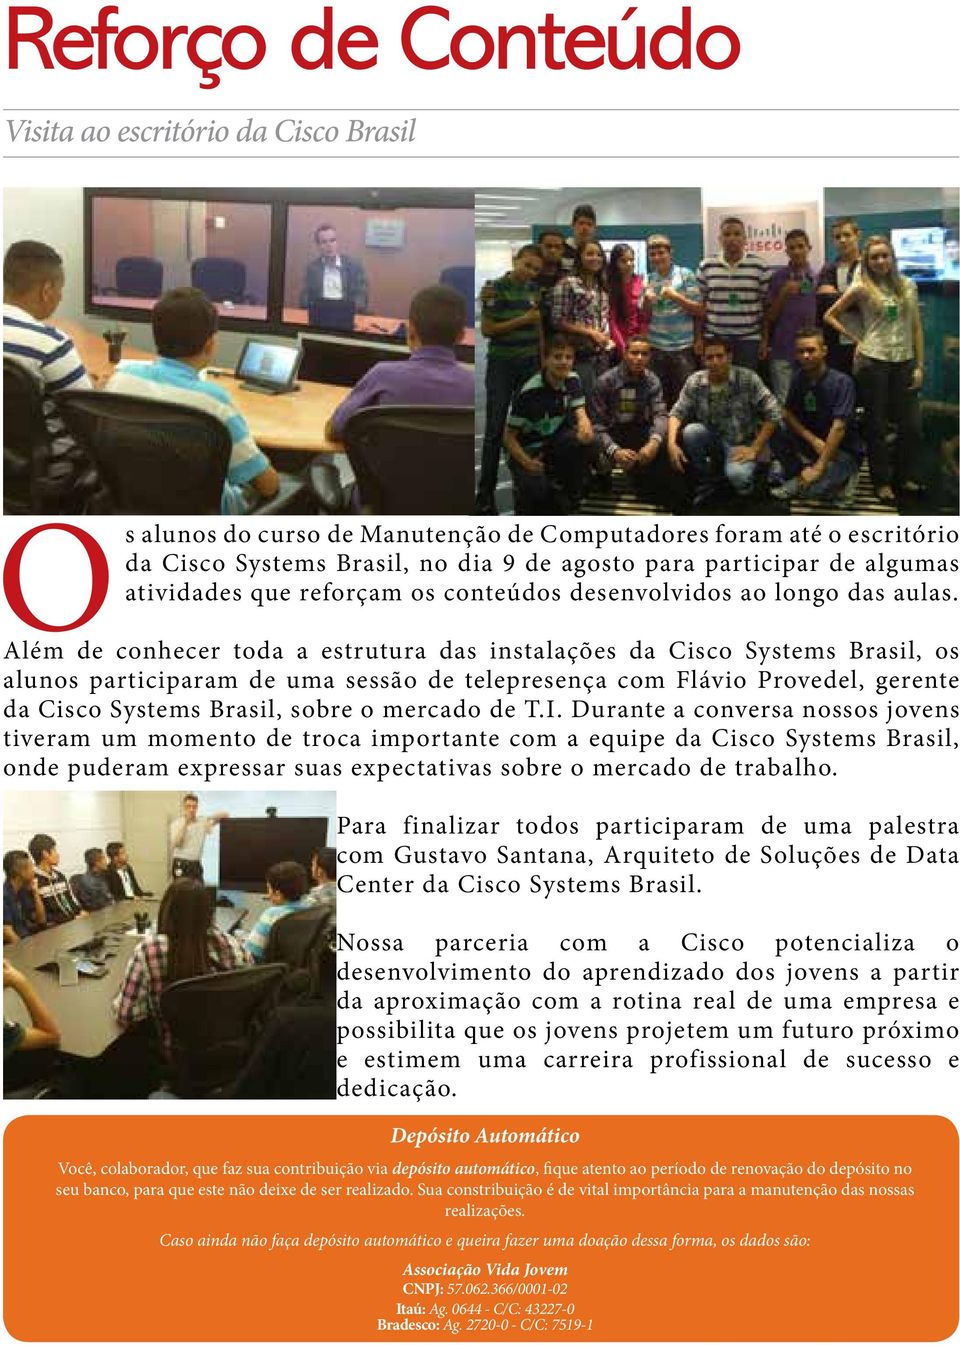 Além de conhecer toda a estrutura das instalações da Cisco Systems Brasil, os alunos participaram de uma sessão de telepresença com Flávio Provedel, gerente da Cisco Systems Brasil, sobre o mercado